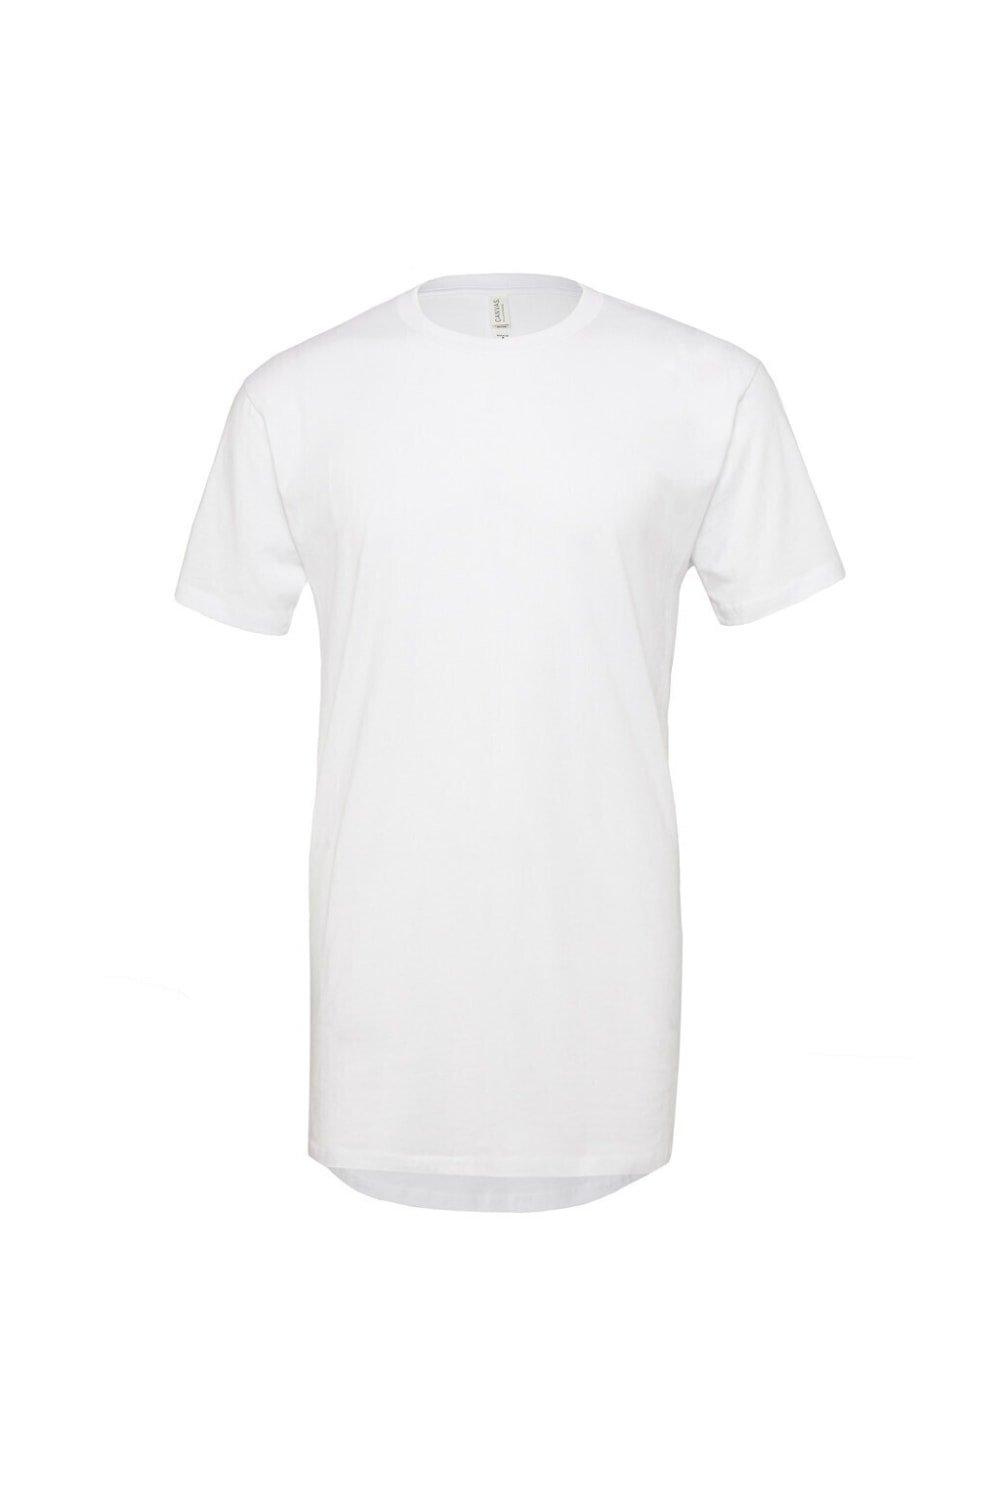 Длинная городская футболка Bella + Canvas, белый футболка sol s размер 2xl серый